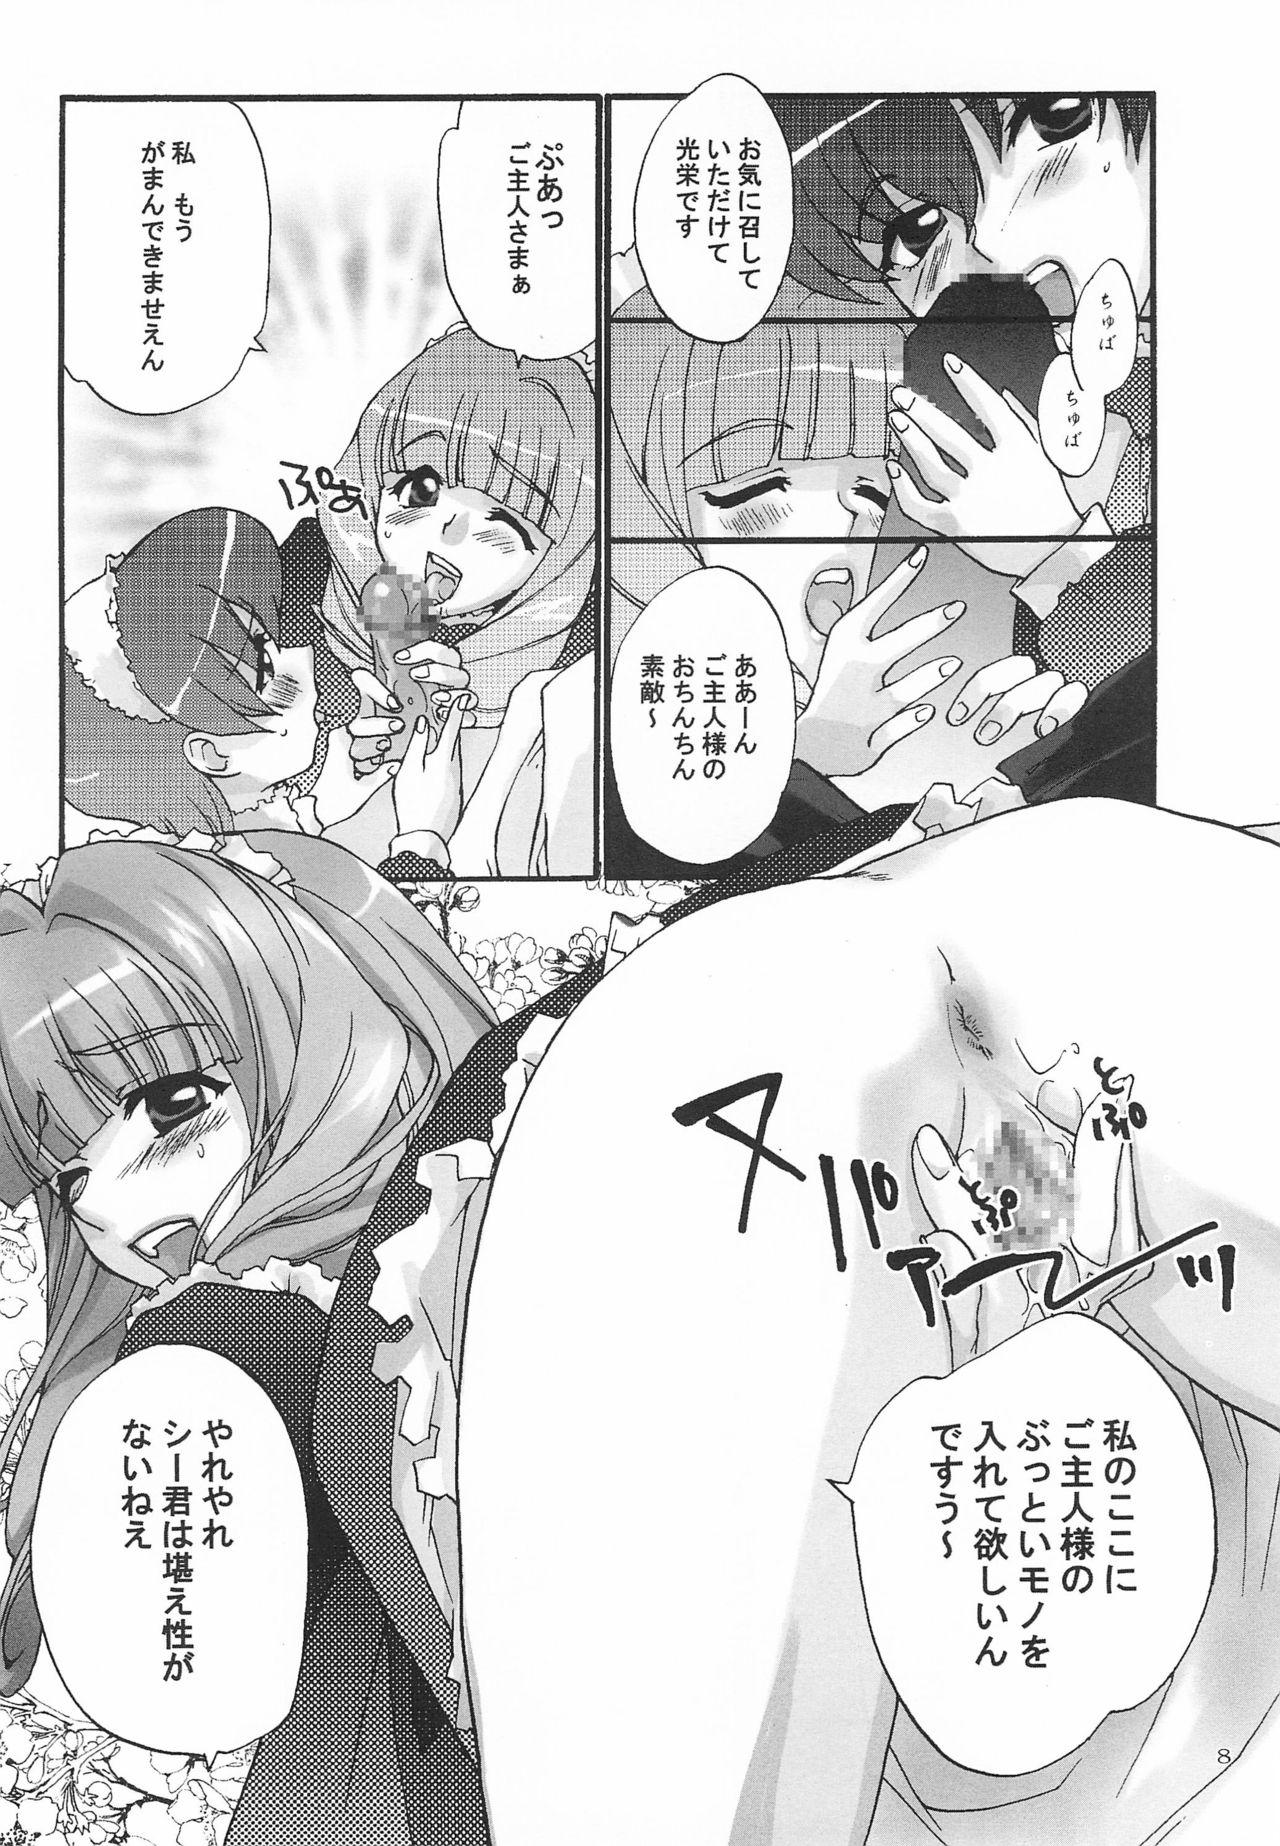 Vip Alleluia - Sakura taisen | sakura wars Swallow - Page 10